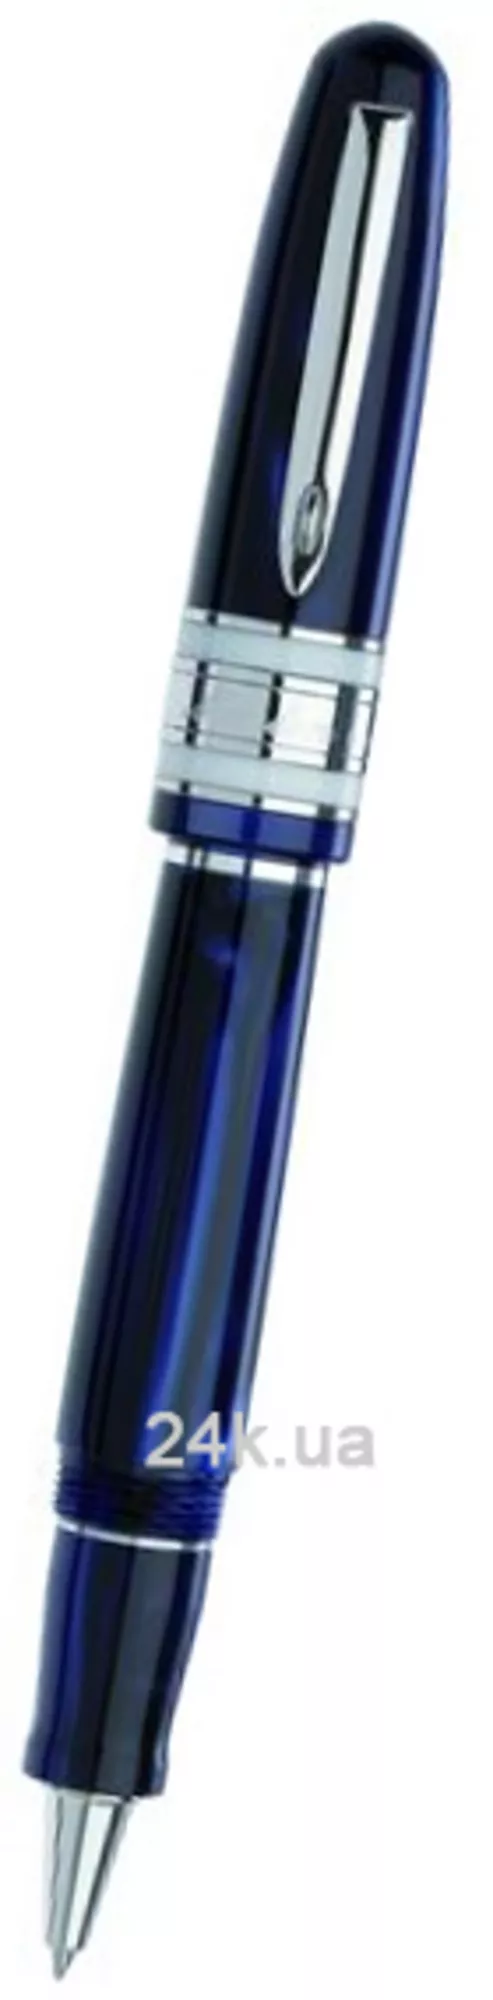 Ручка Marlen M10.123 RB Blue